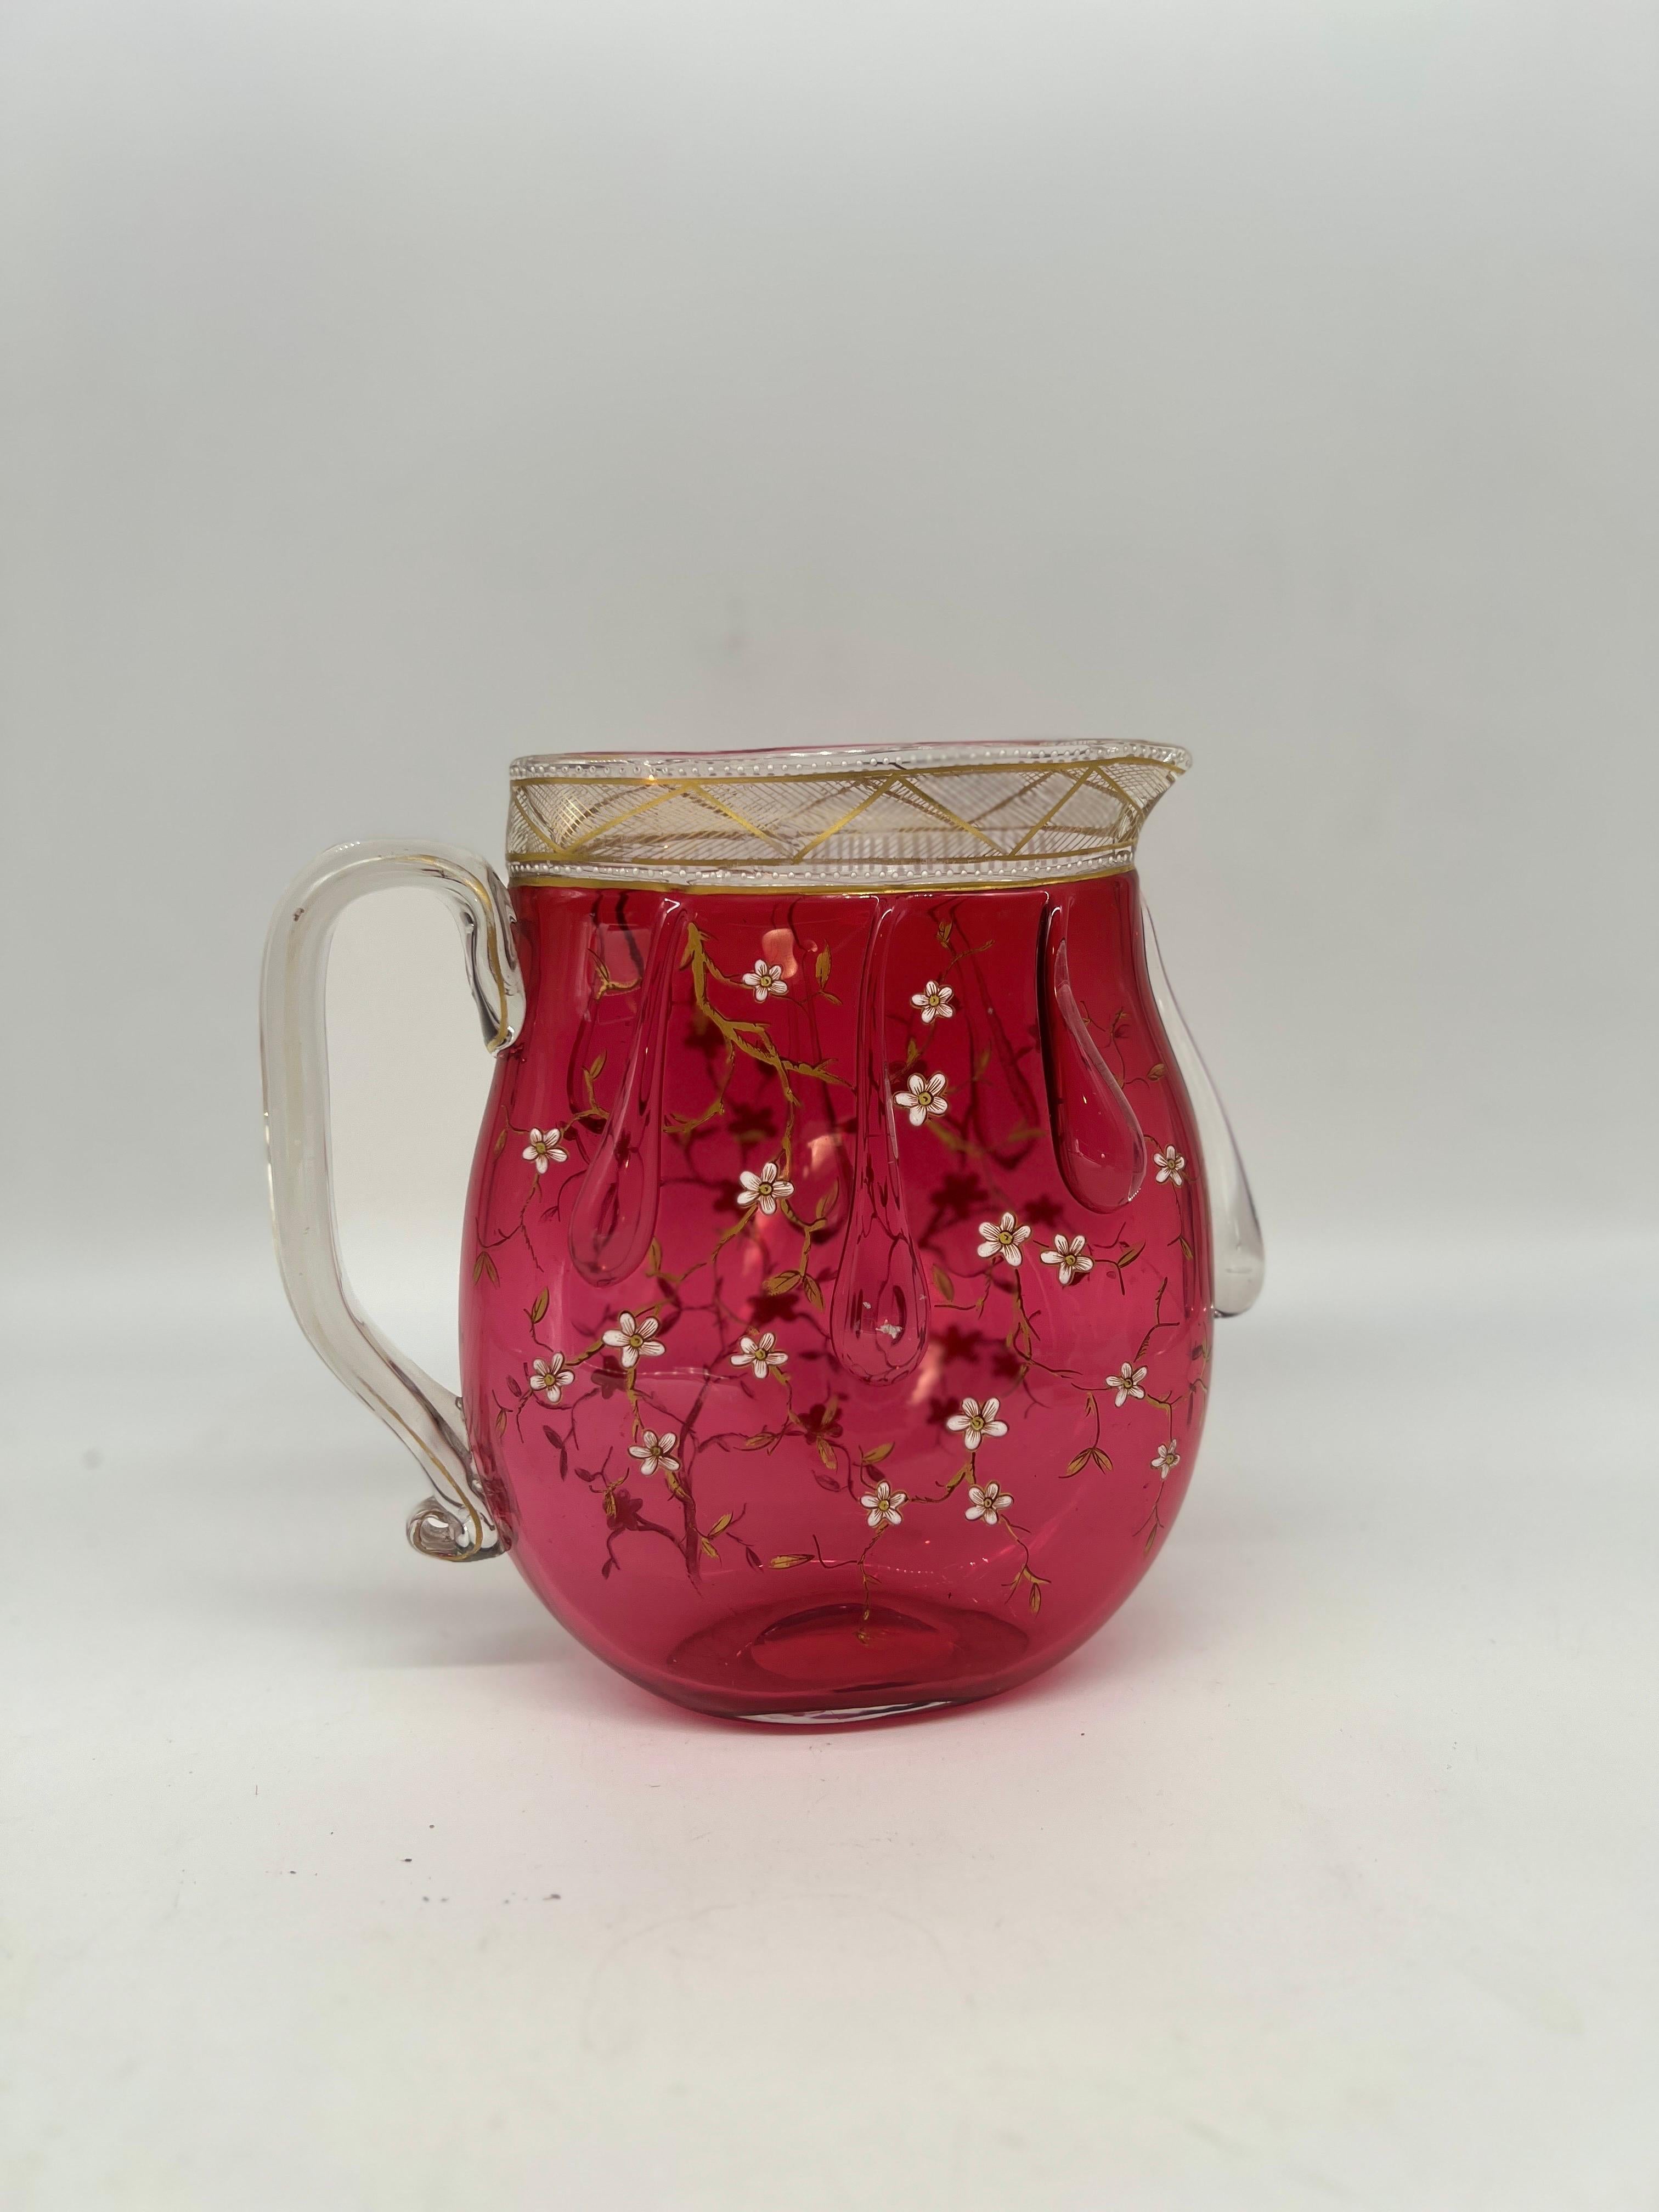 La verrerie Moser existe depuis 1857 et crée des œuvres d'art étonnantes et remarquables à partir de vases, d'urnes, d'objets en verre et bien plus encore. La capacité de l'entreprise à maîtriser les travaux de gravure et d'émaillage l'a conduite à